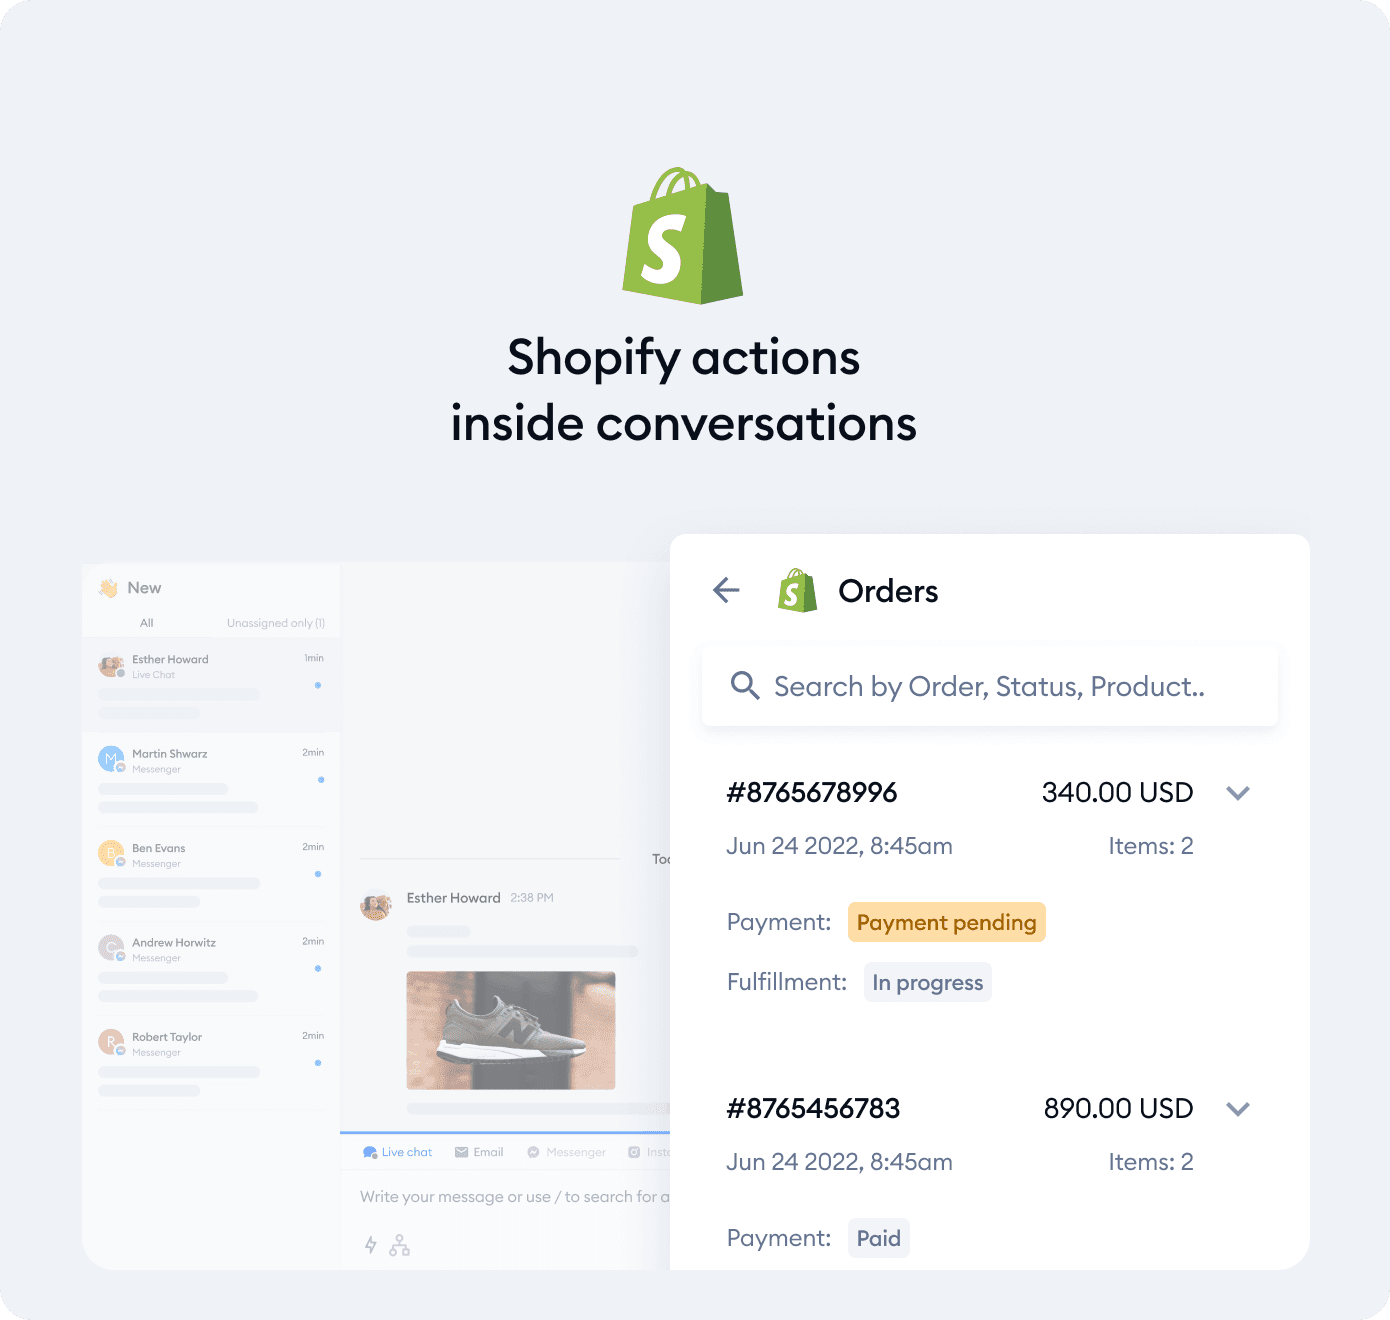 Boostez vos ventes grâce à une intégration avancée avec Shopify